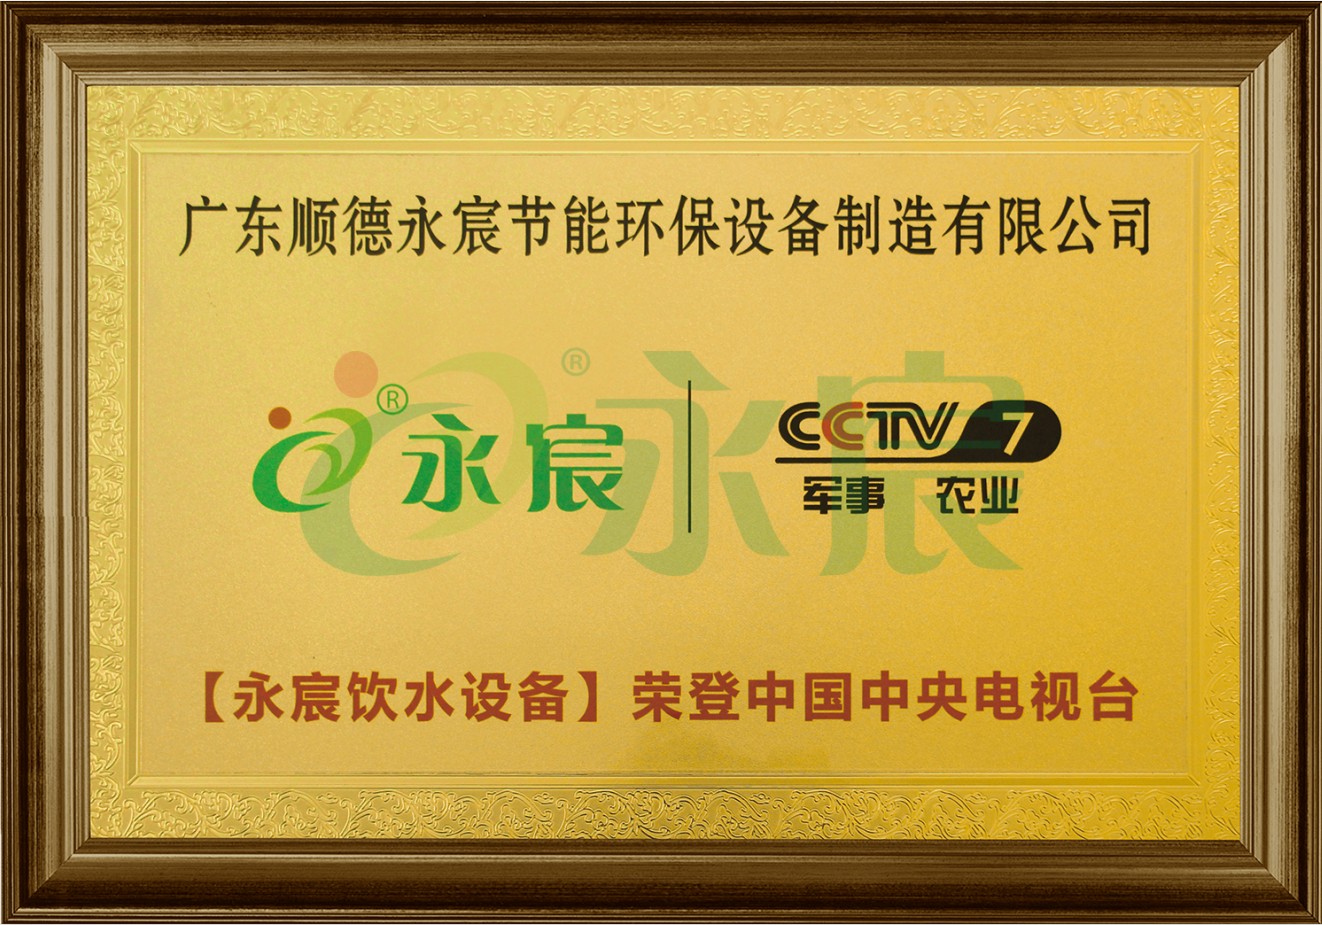 CCTV7 央视展播品牌